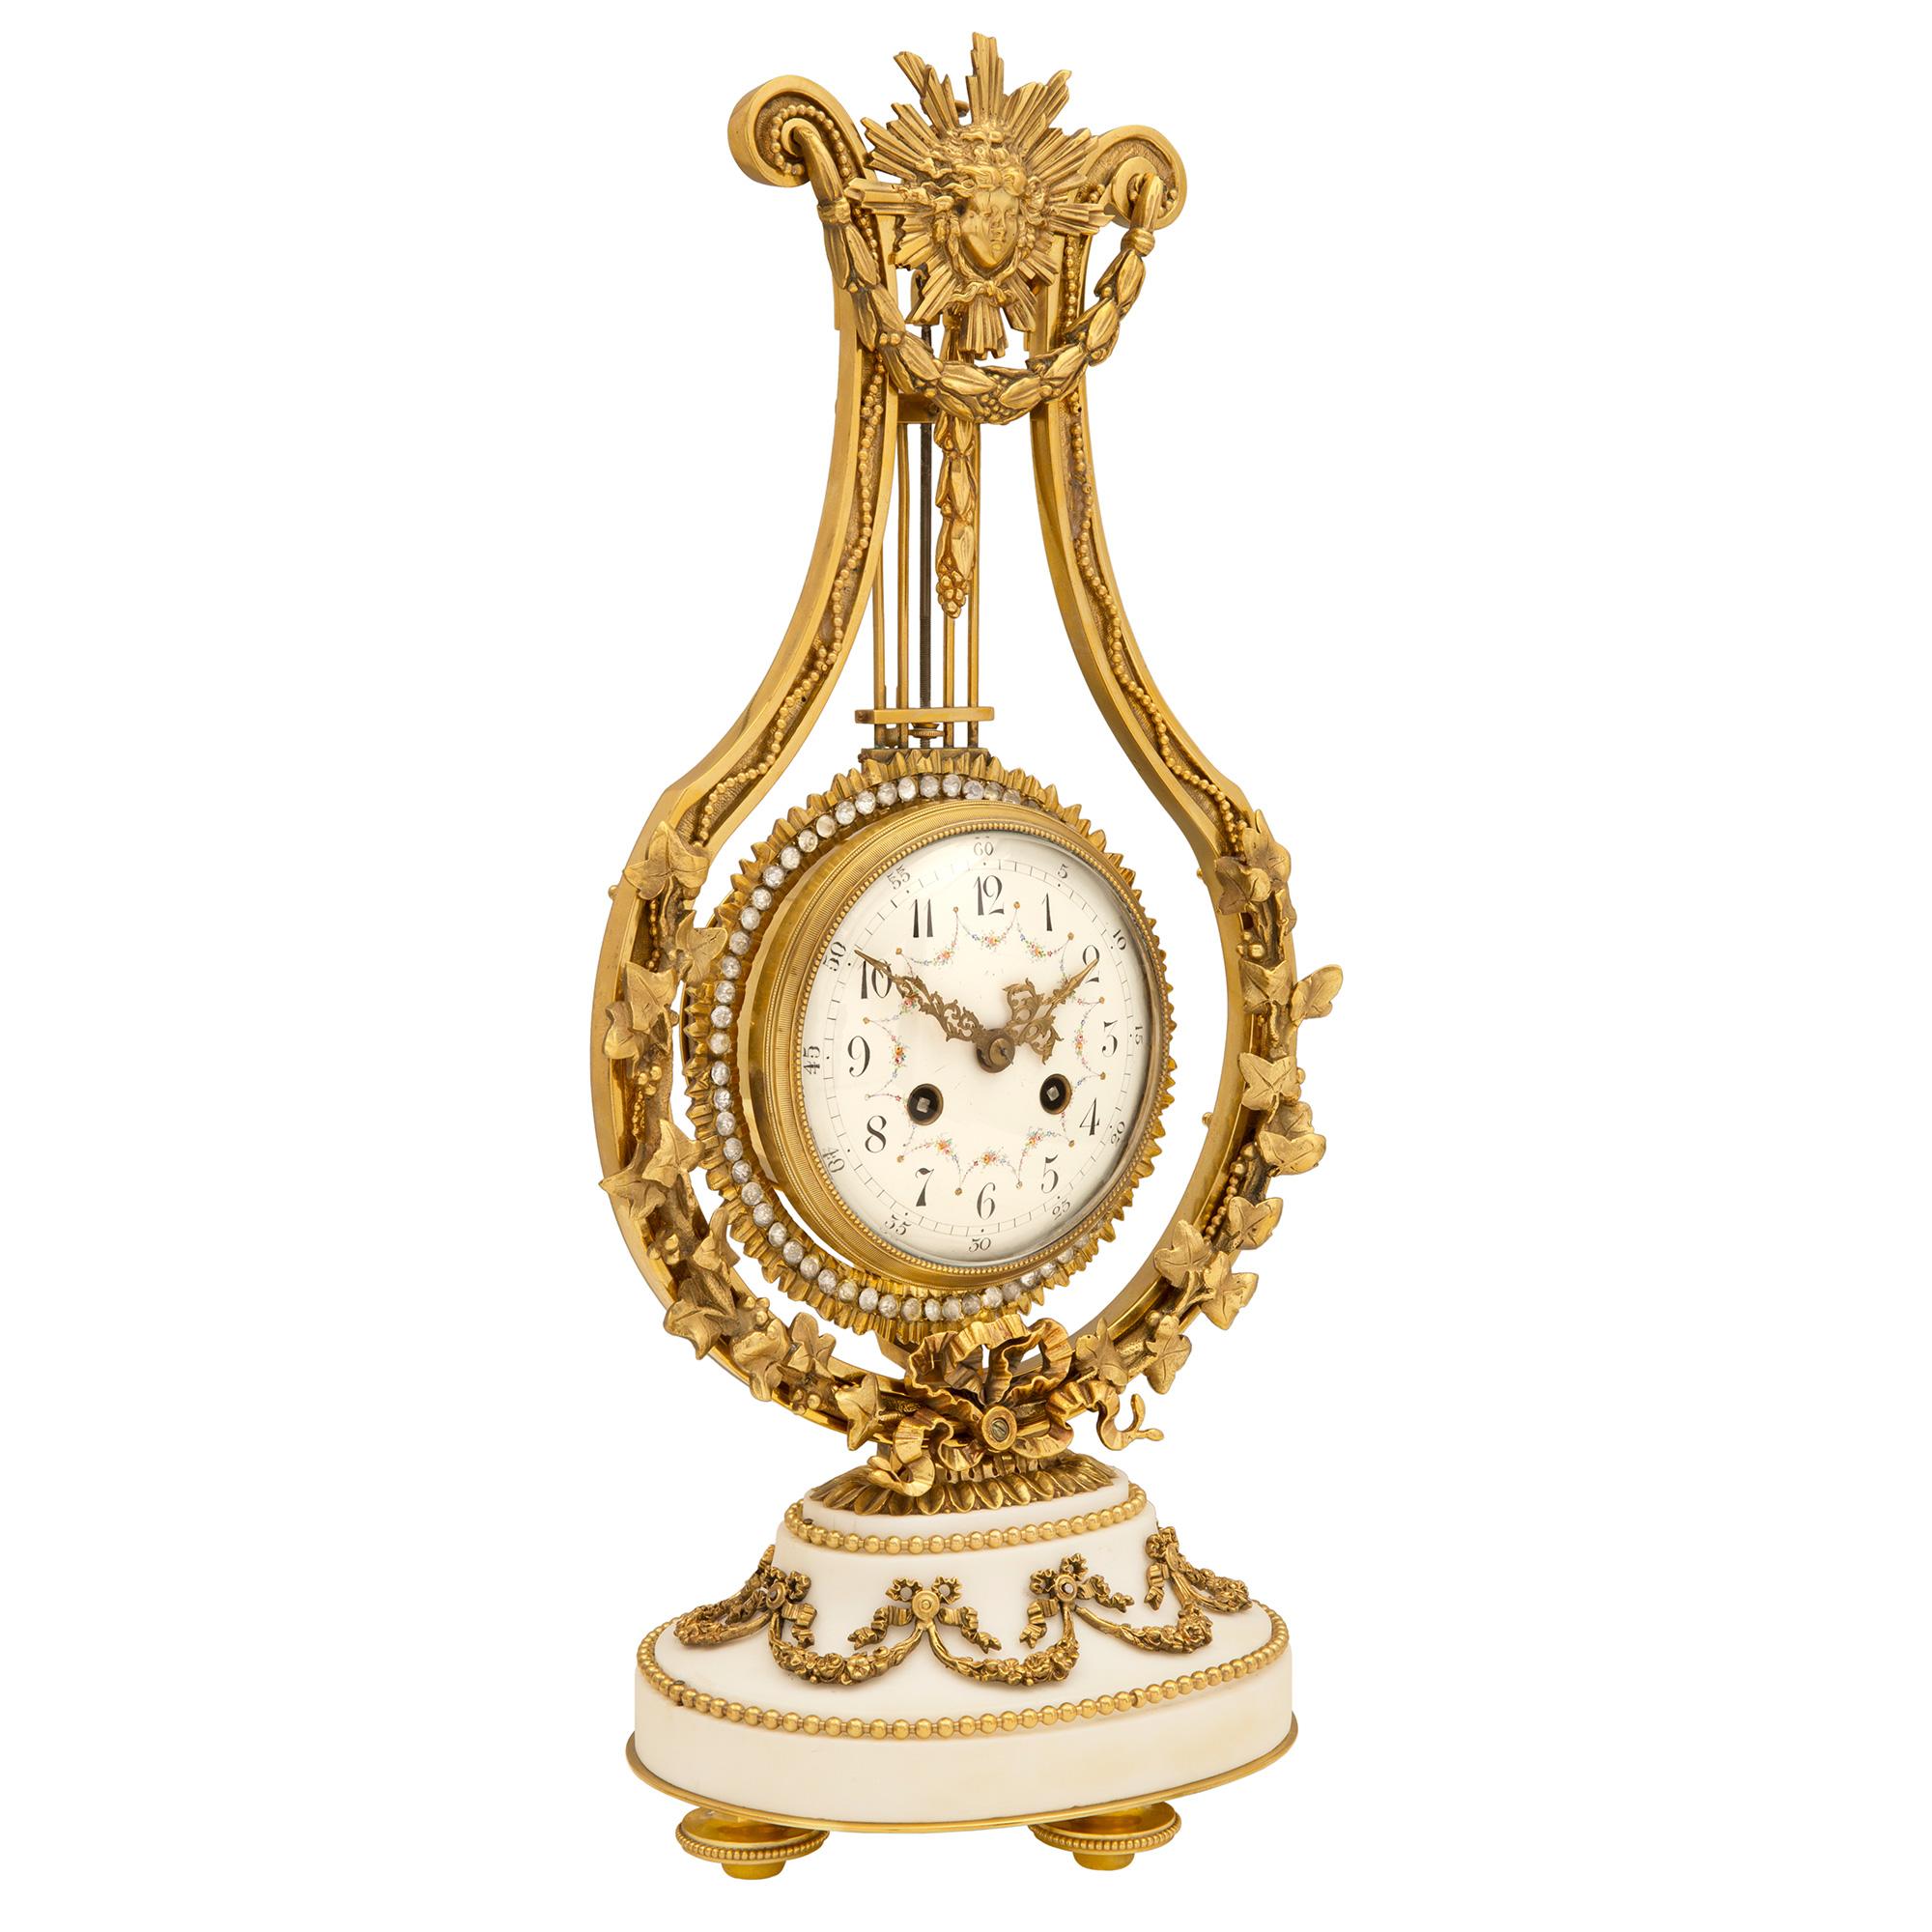 Eine sehr exquisite französische Uhr aus der Mitte des 19. Jahrhunderts aus Louis XVI-Ormolu, weißem Carrara-Marmor und Kristall. Die Uhr steht auf einem geformten ovalen Sockel aus weißem Carrara-Marmor, der von reich ziselierten, perlenbesetzten,